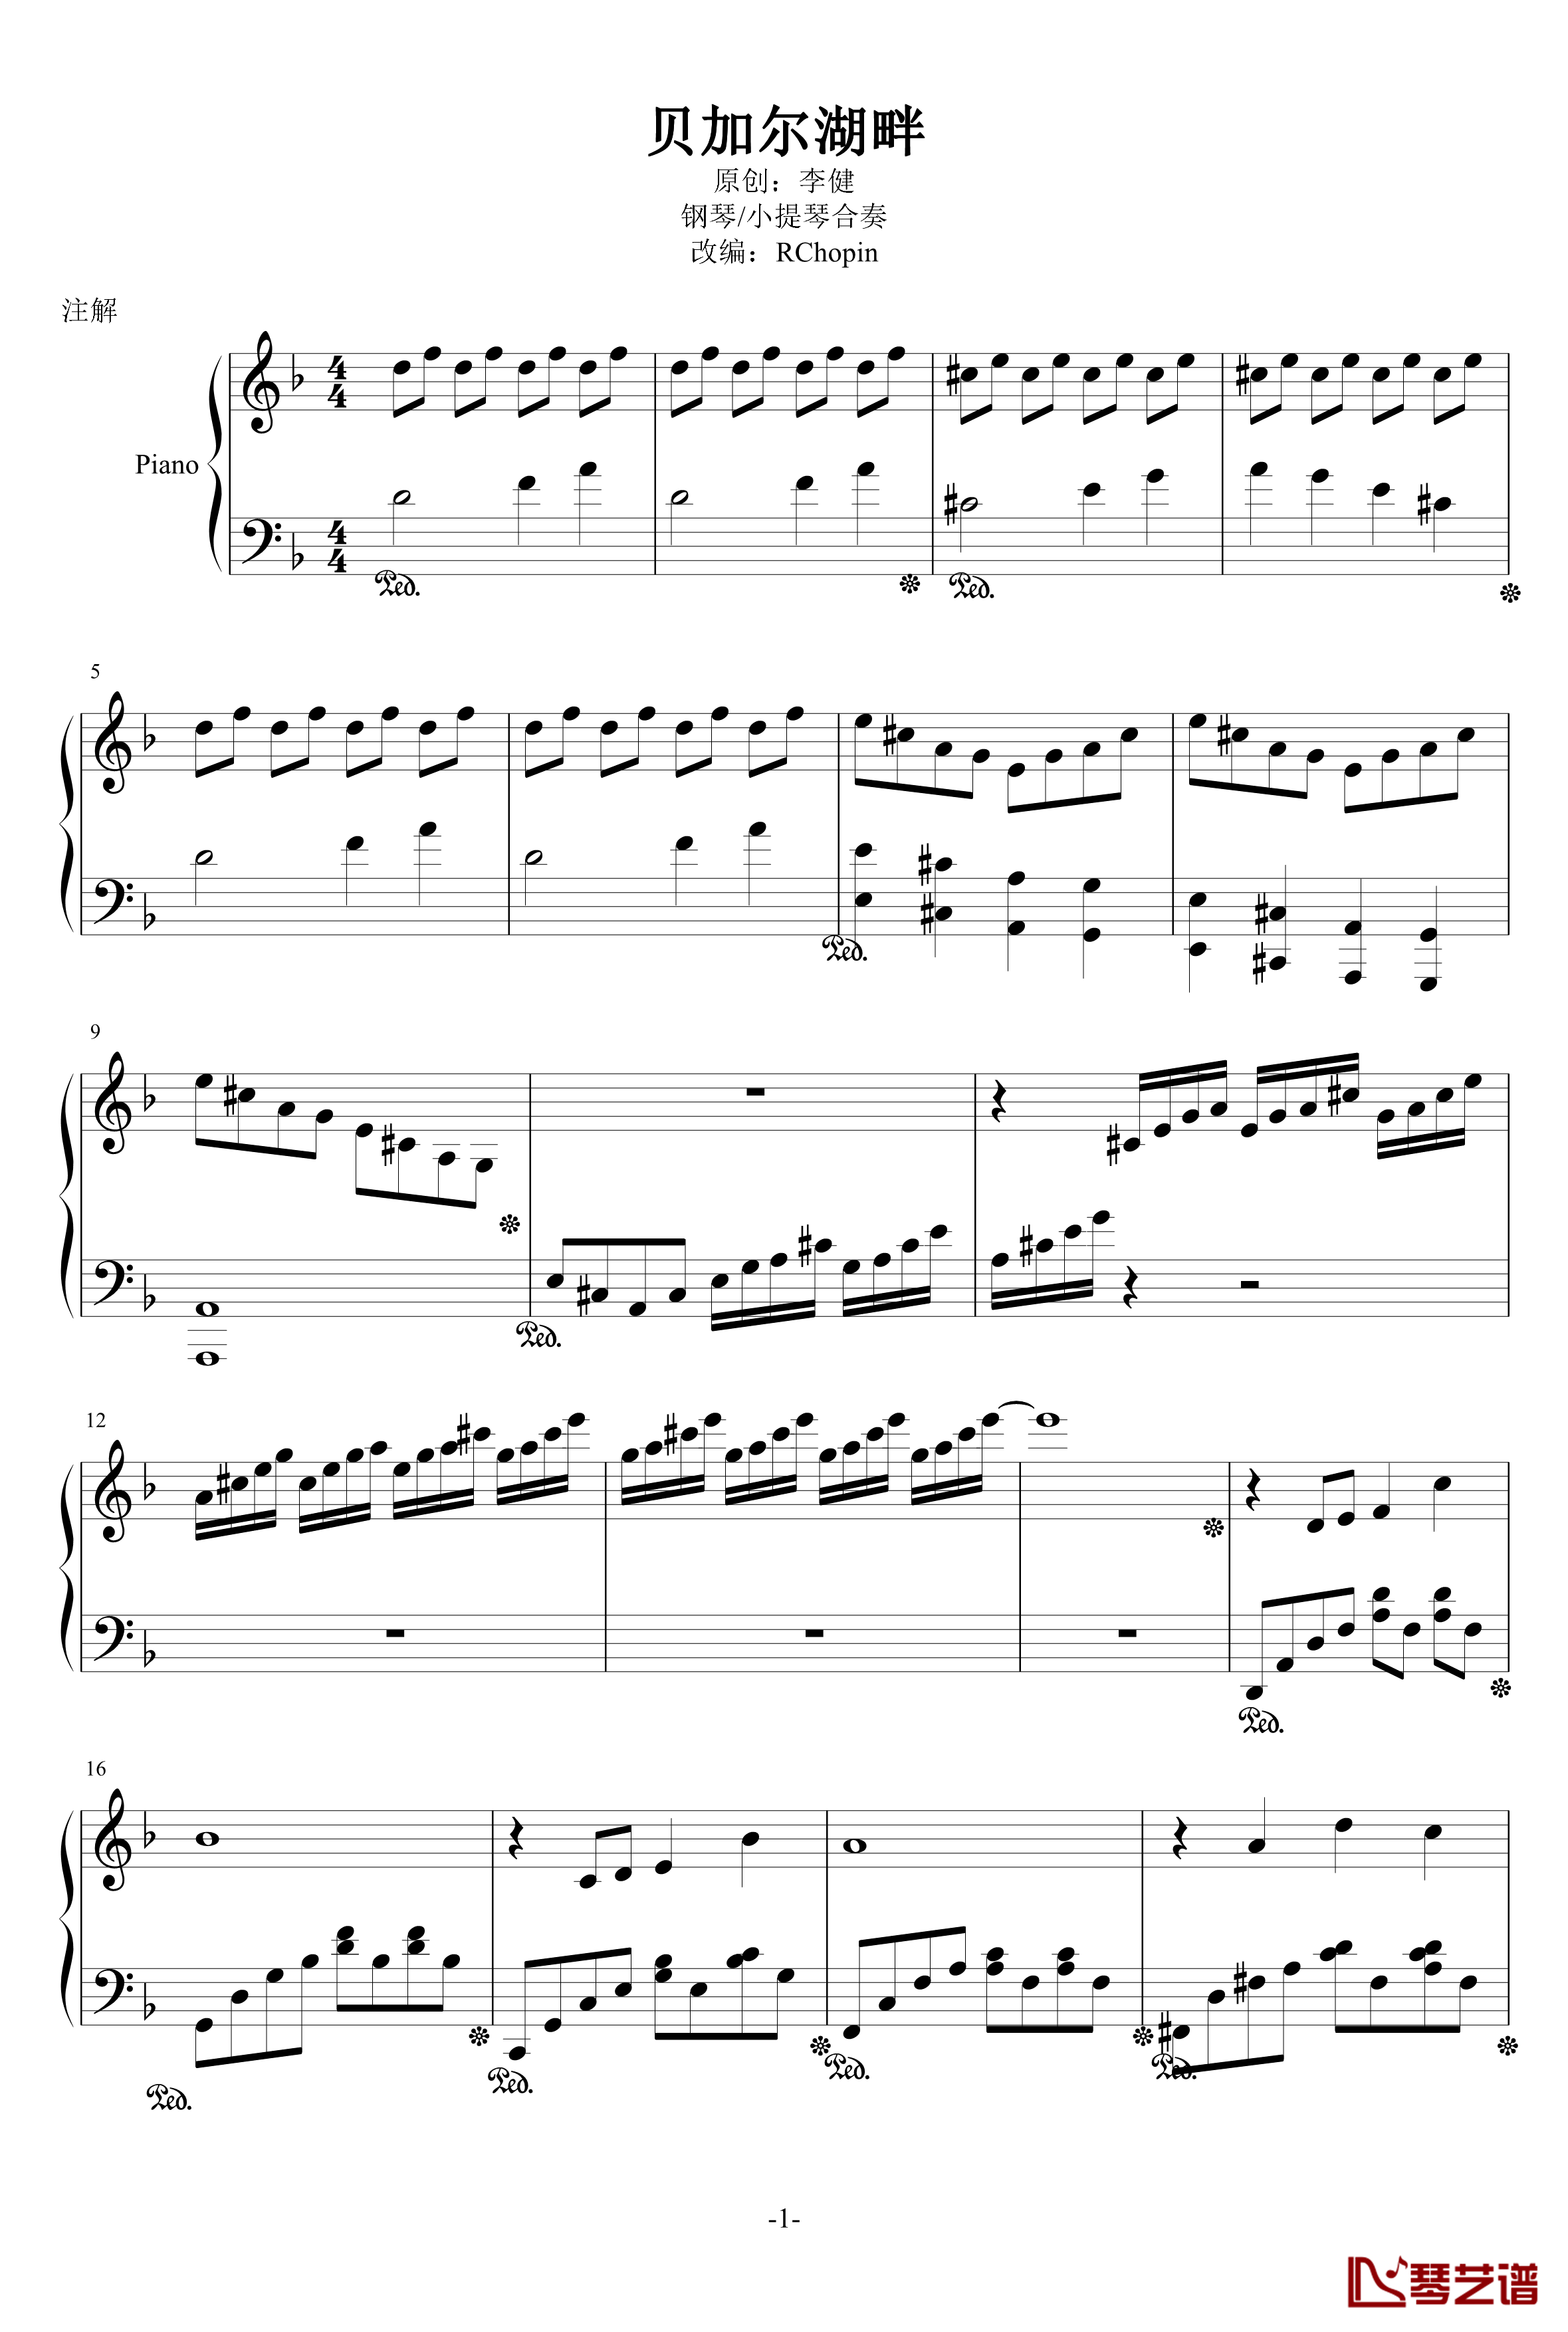 贝加尔湖畔钢琴谱-小提琴钢琴合奏-李健1